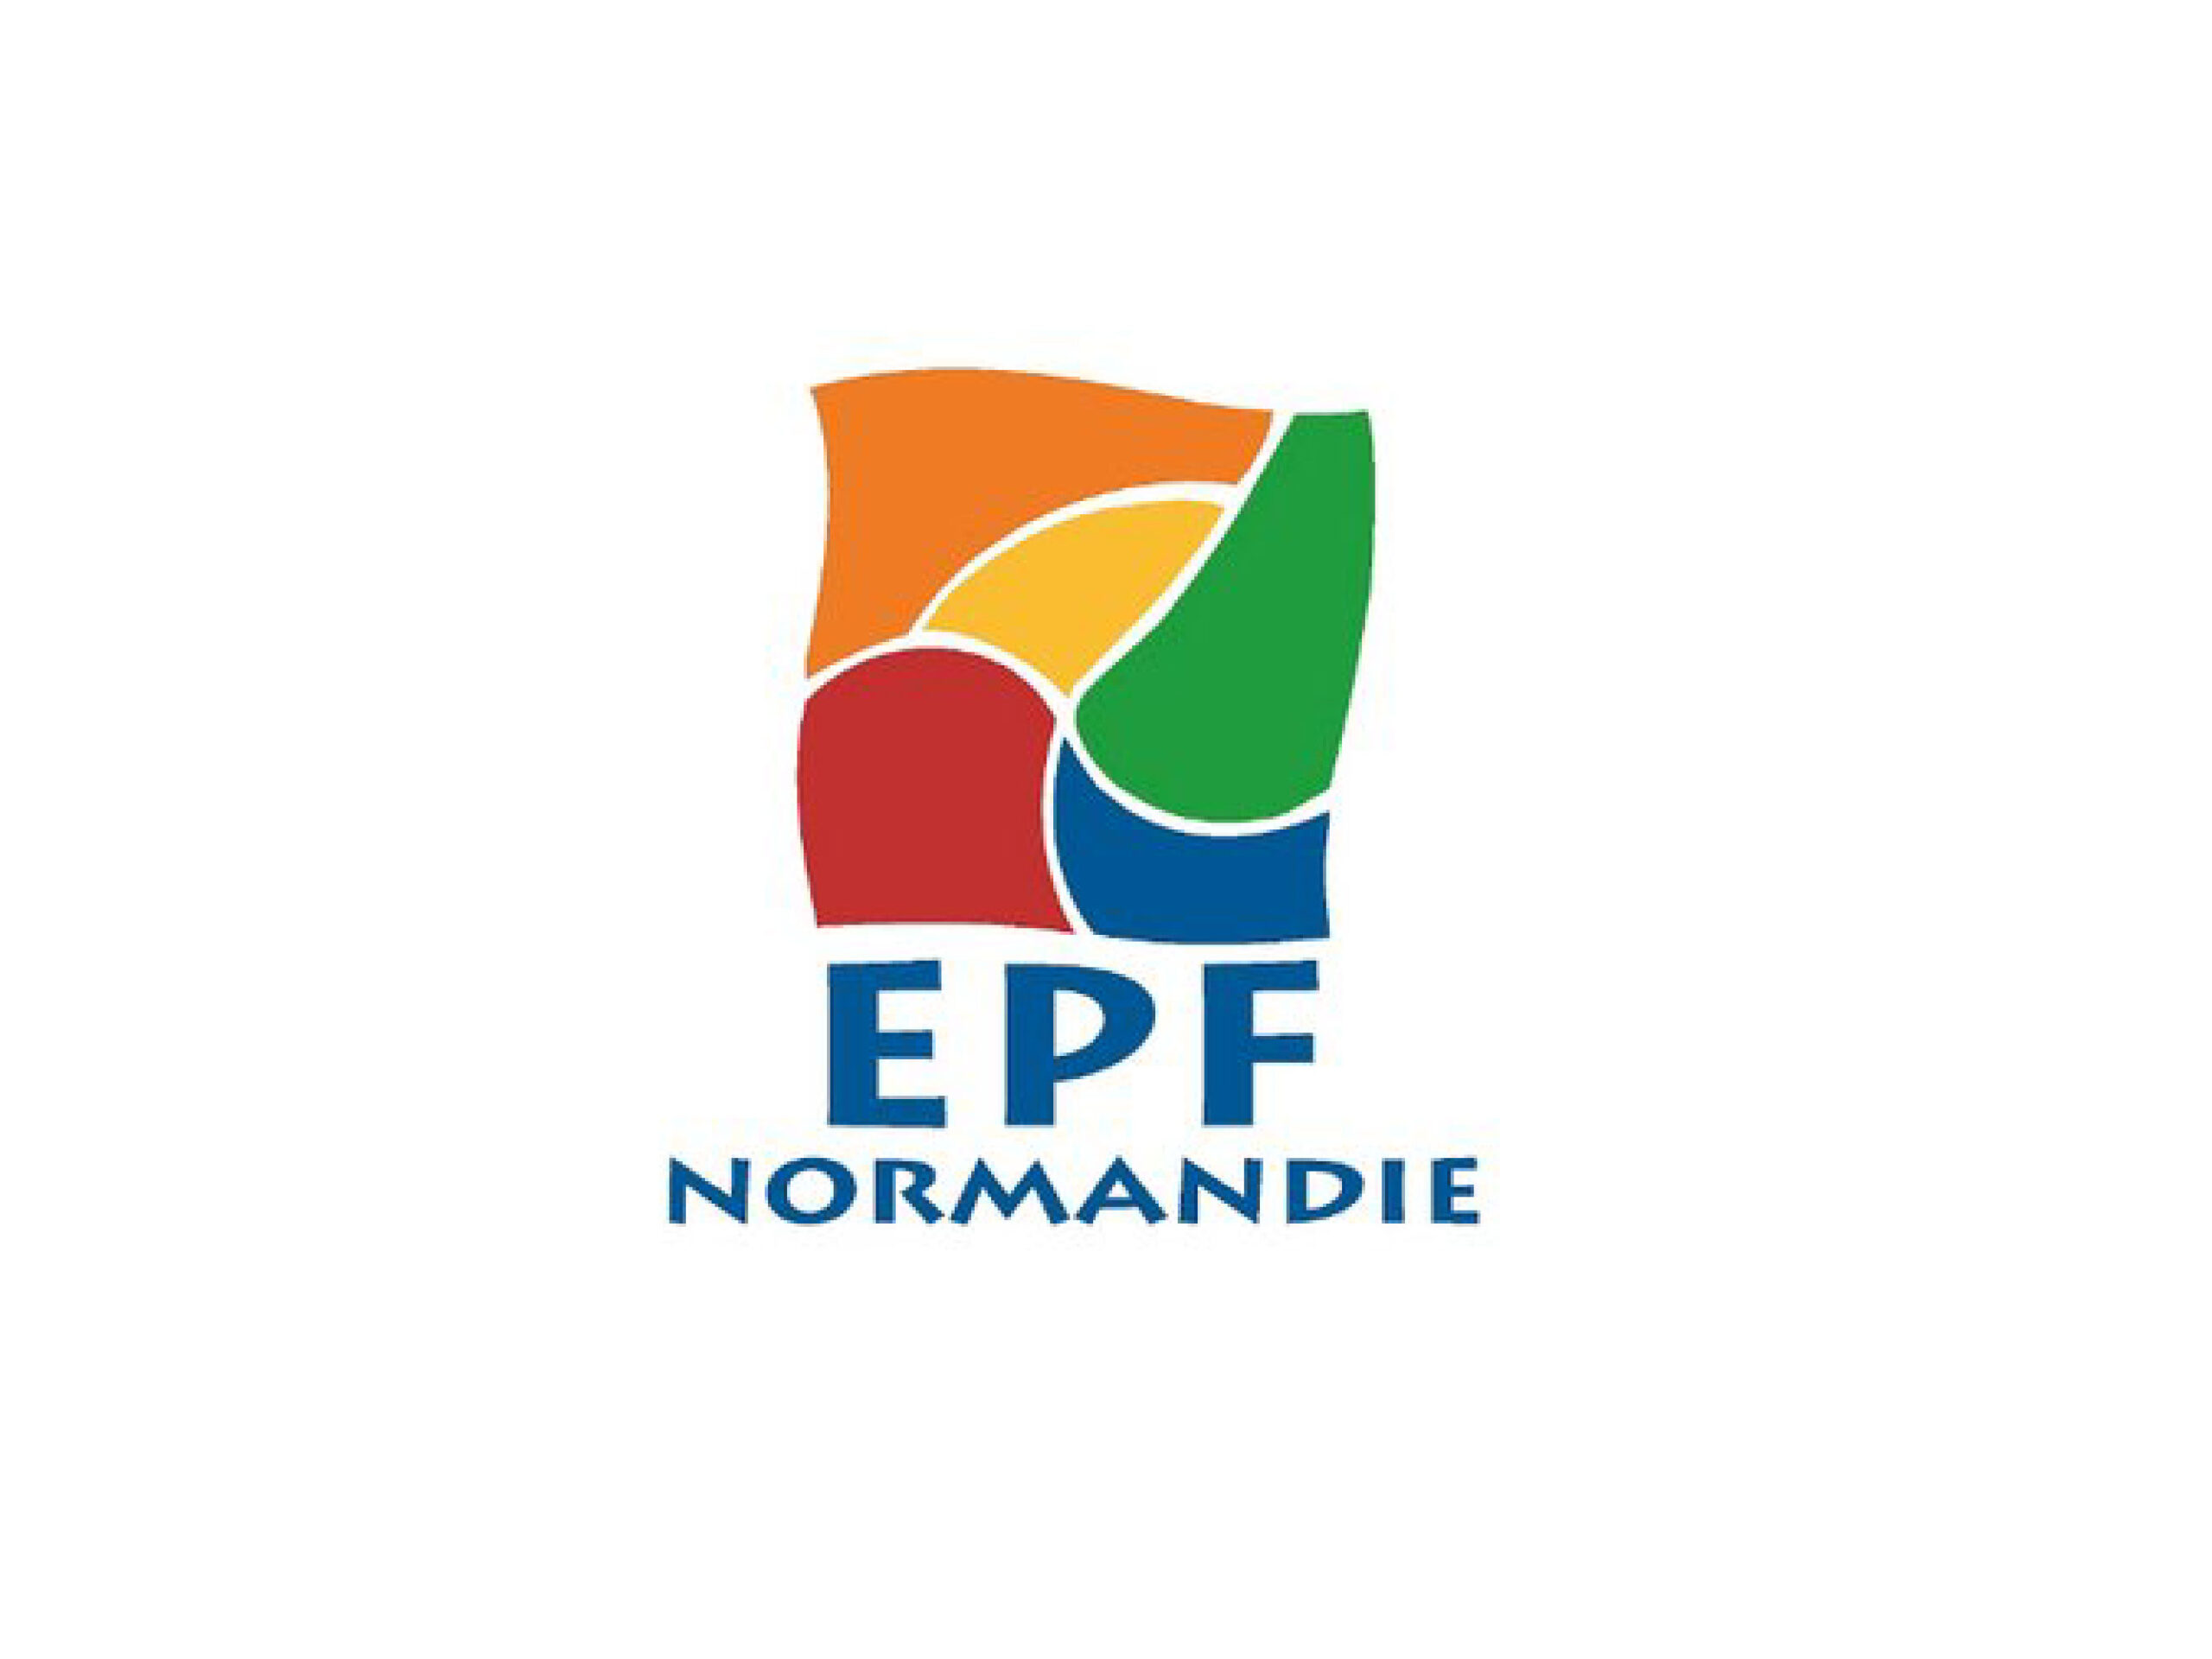 EPF normandie